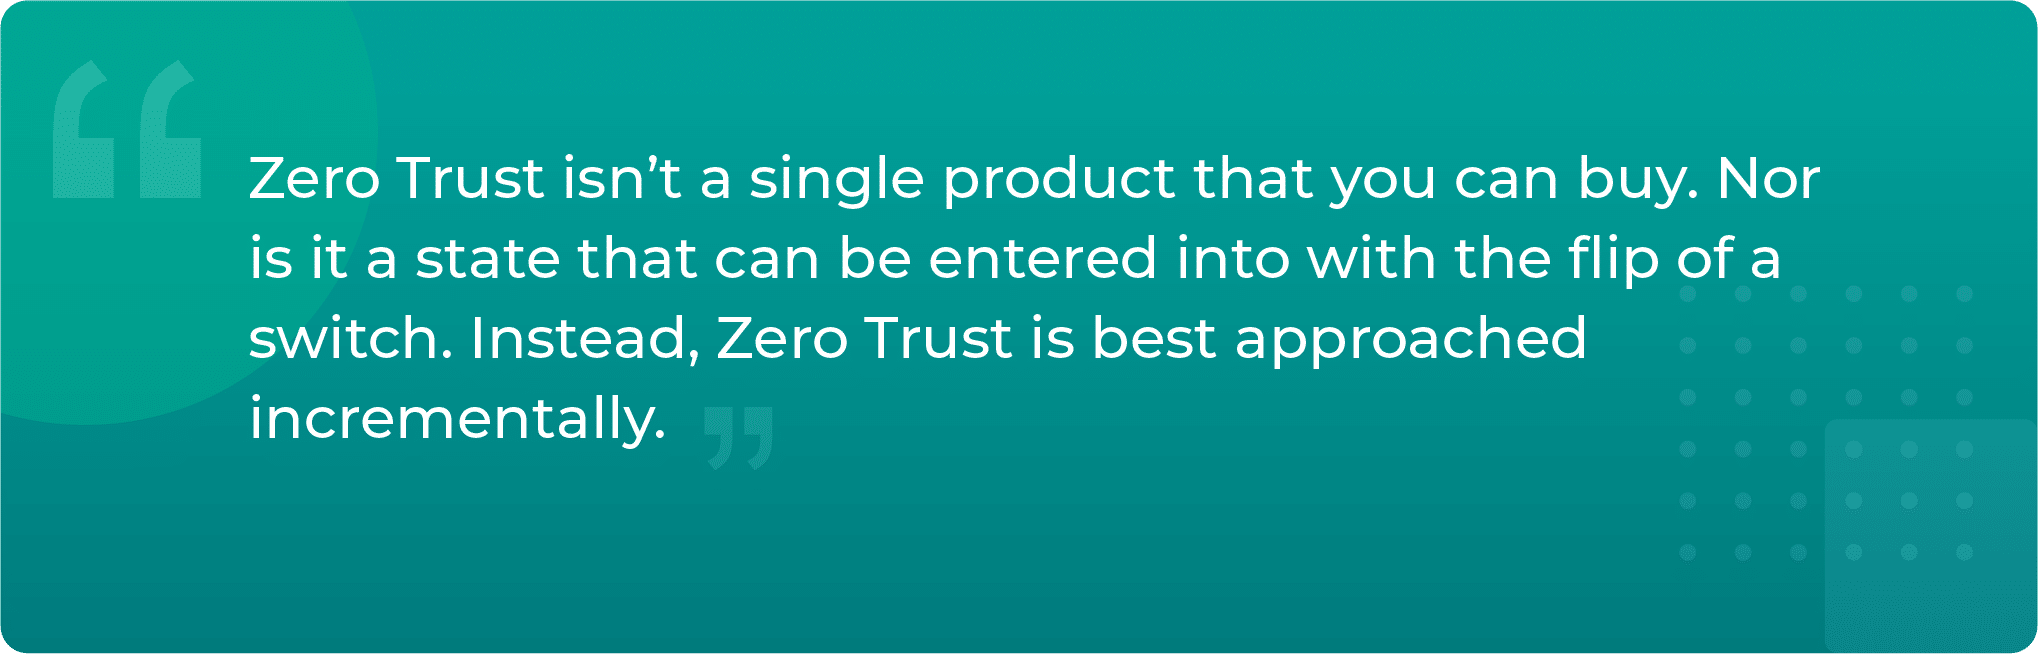 zero-trust-identity-quote-2